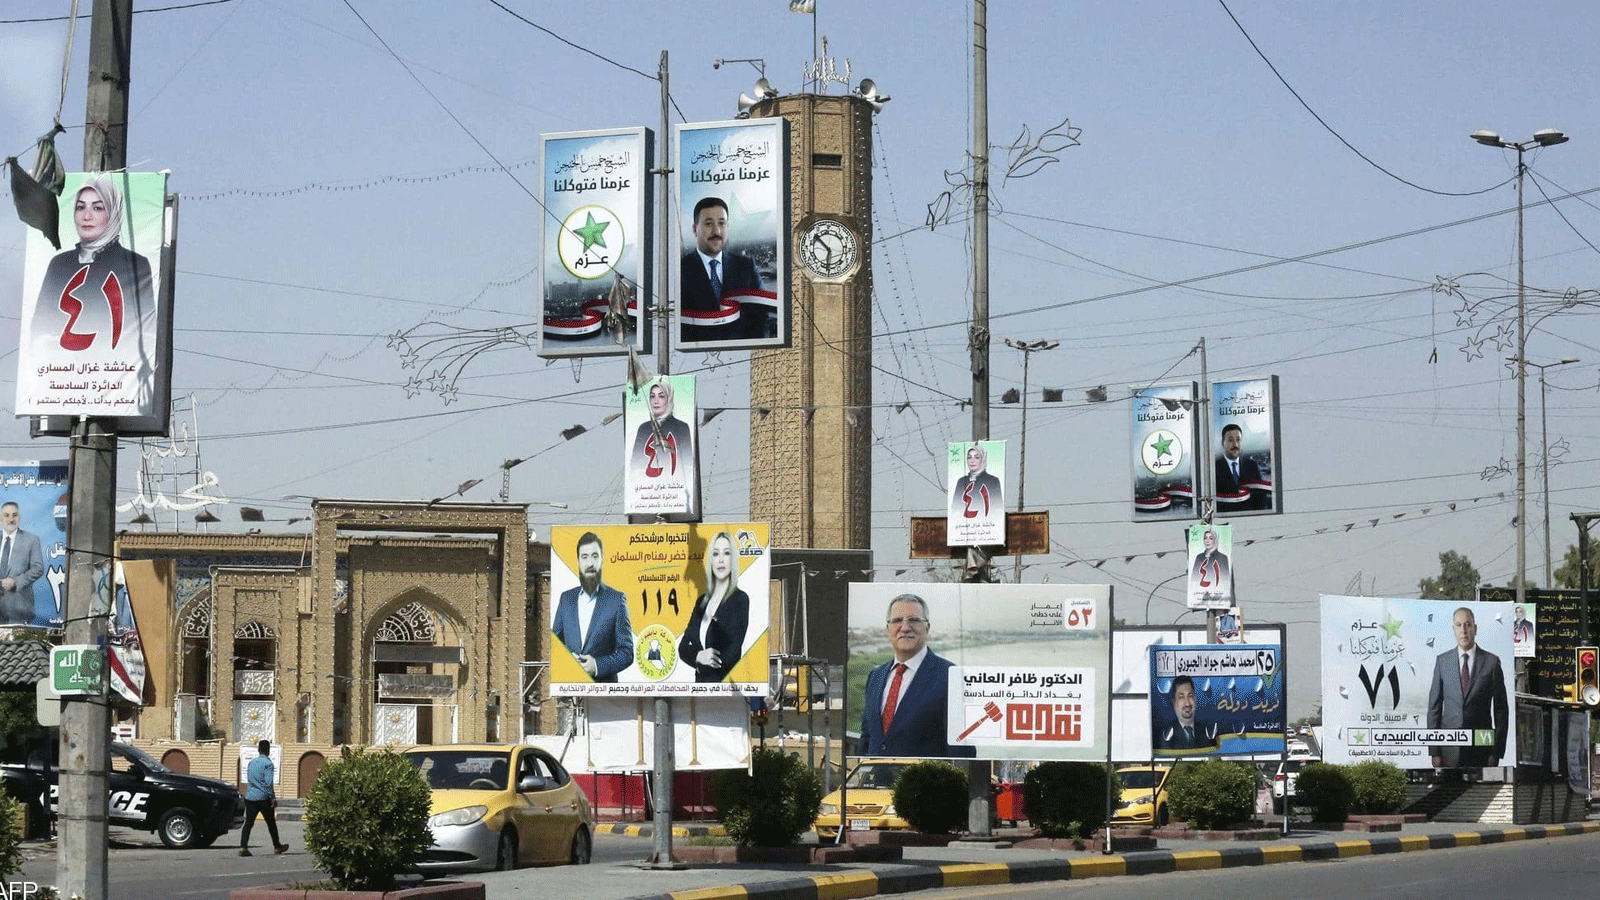 دعايات لمرشحي الانتخابات العراقية تنتشر في شوارع البلاد